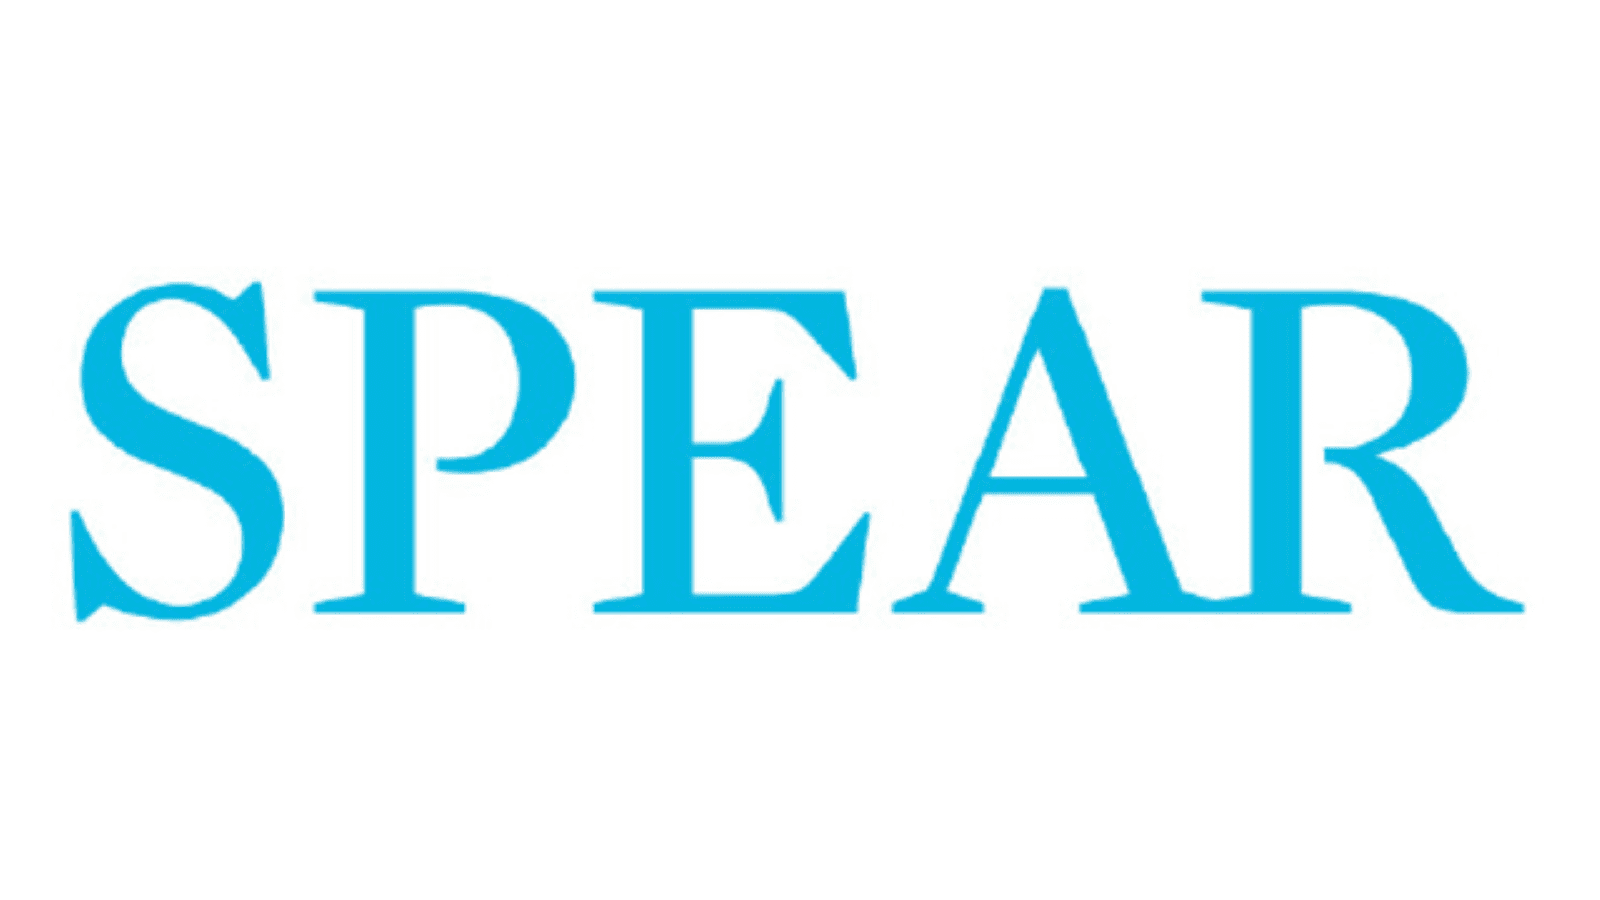 Spear logo